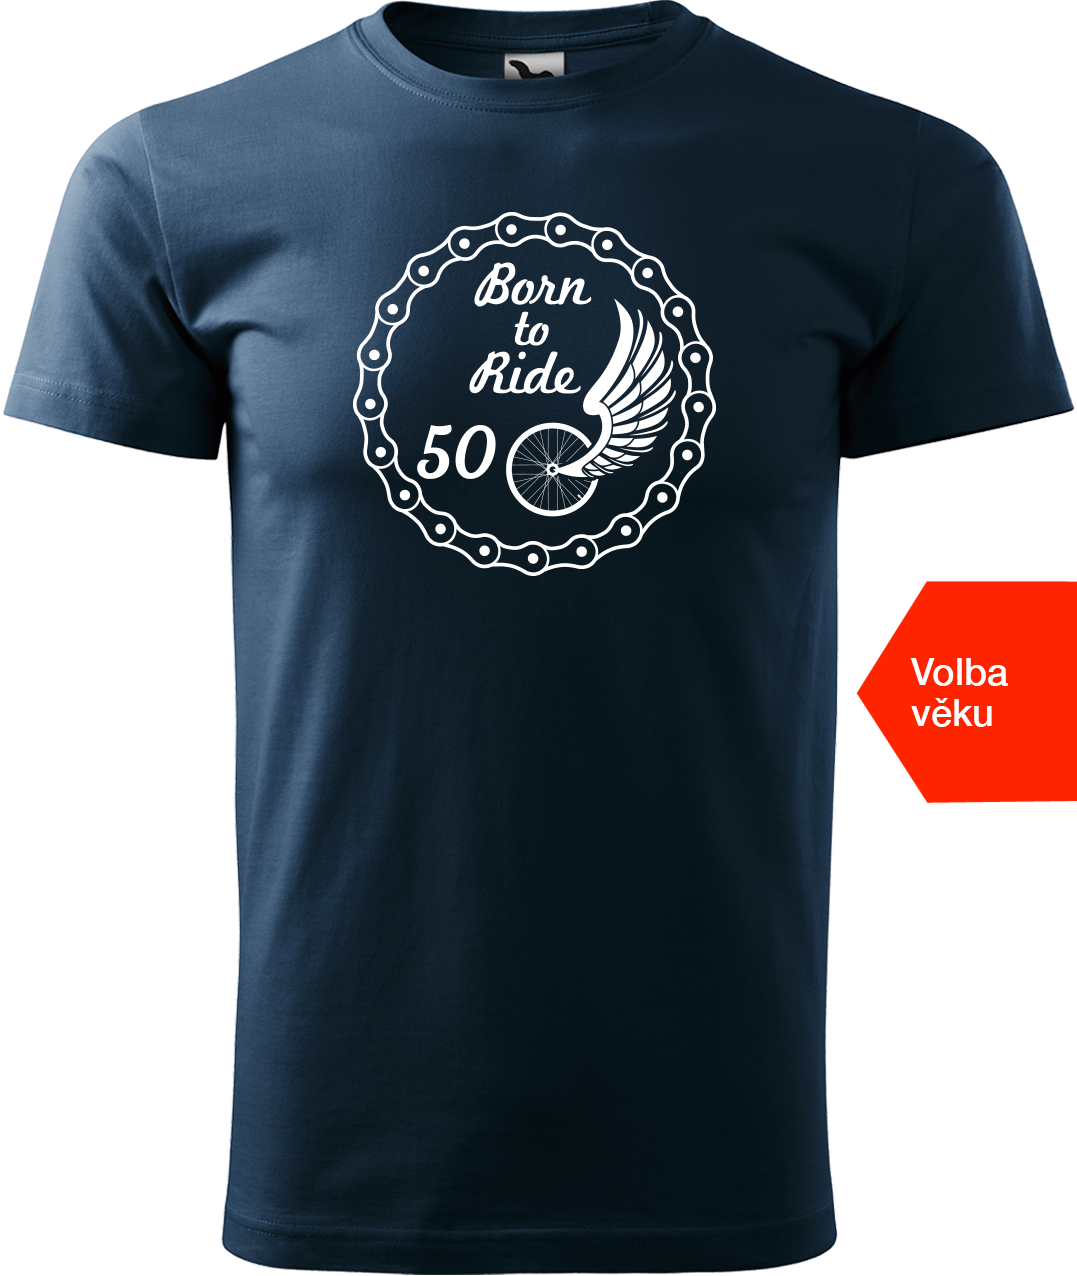 Pánské tričko pro cyklistu s věkem - Born to Ride (wings) Velikost: L, Barva: Námořní modrá (02)